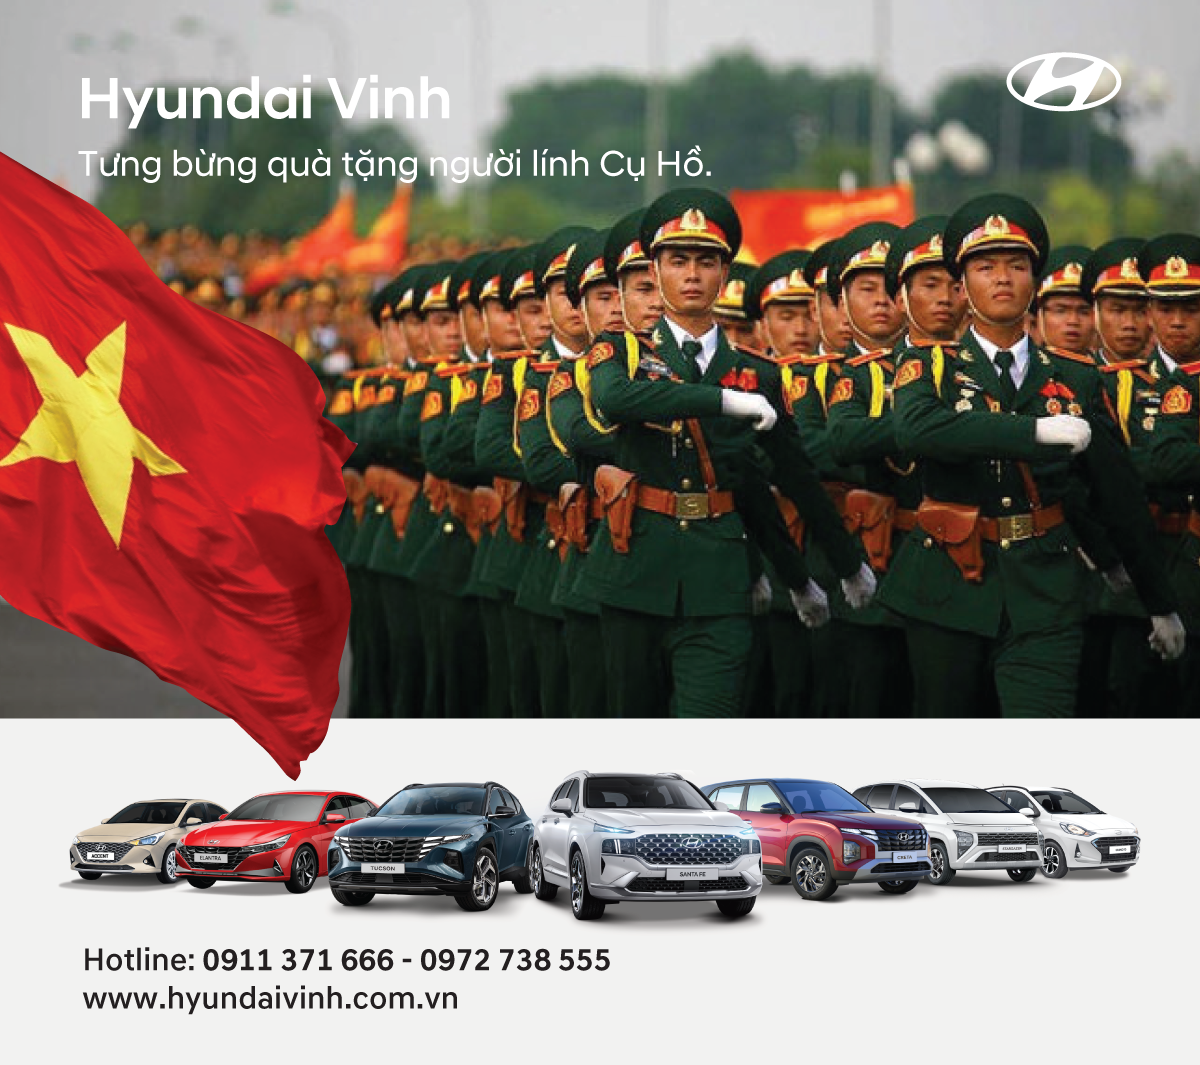 Hyundai Vinh - Tưng Bừng Quà Tặng Người Lính Cụ Hồ